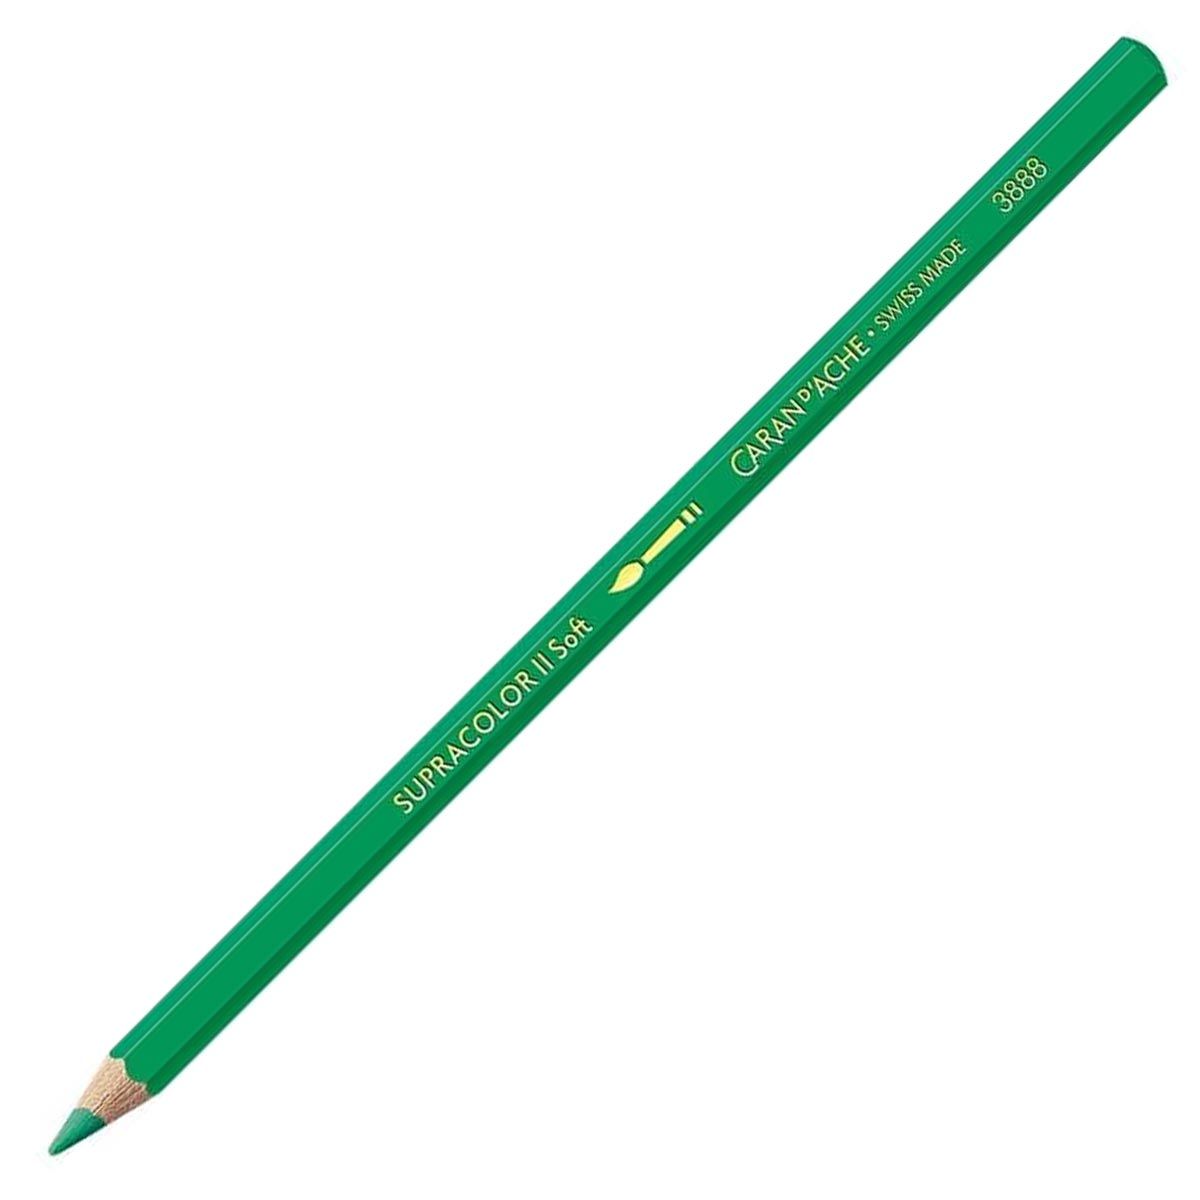 Caran d'Ache Supracolor ll Soft Aquarelle Pencil - Peacock Green 460